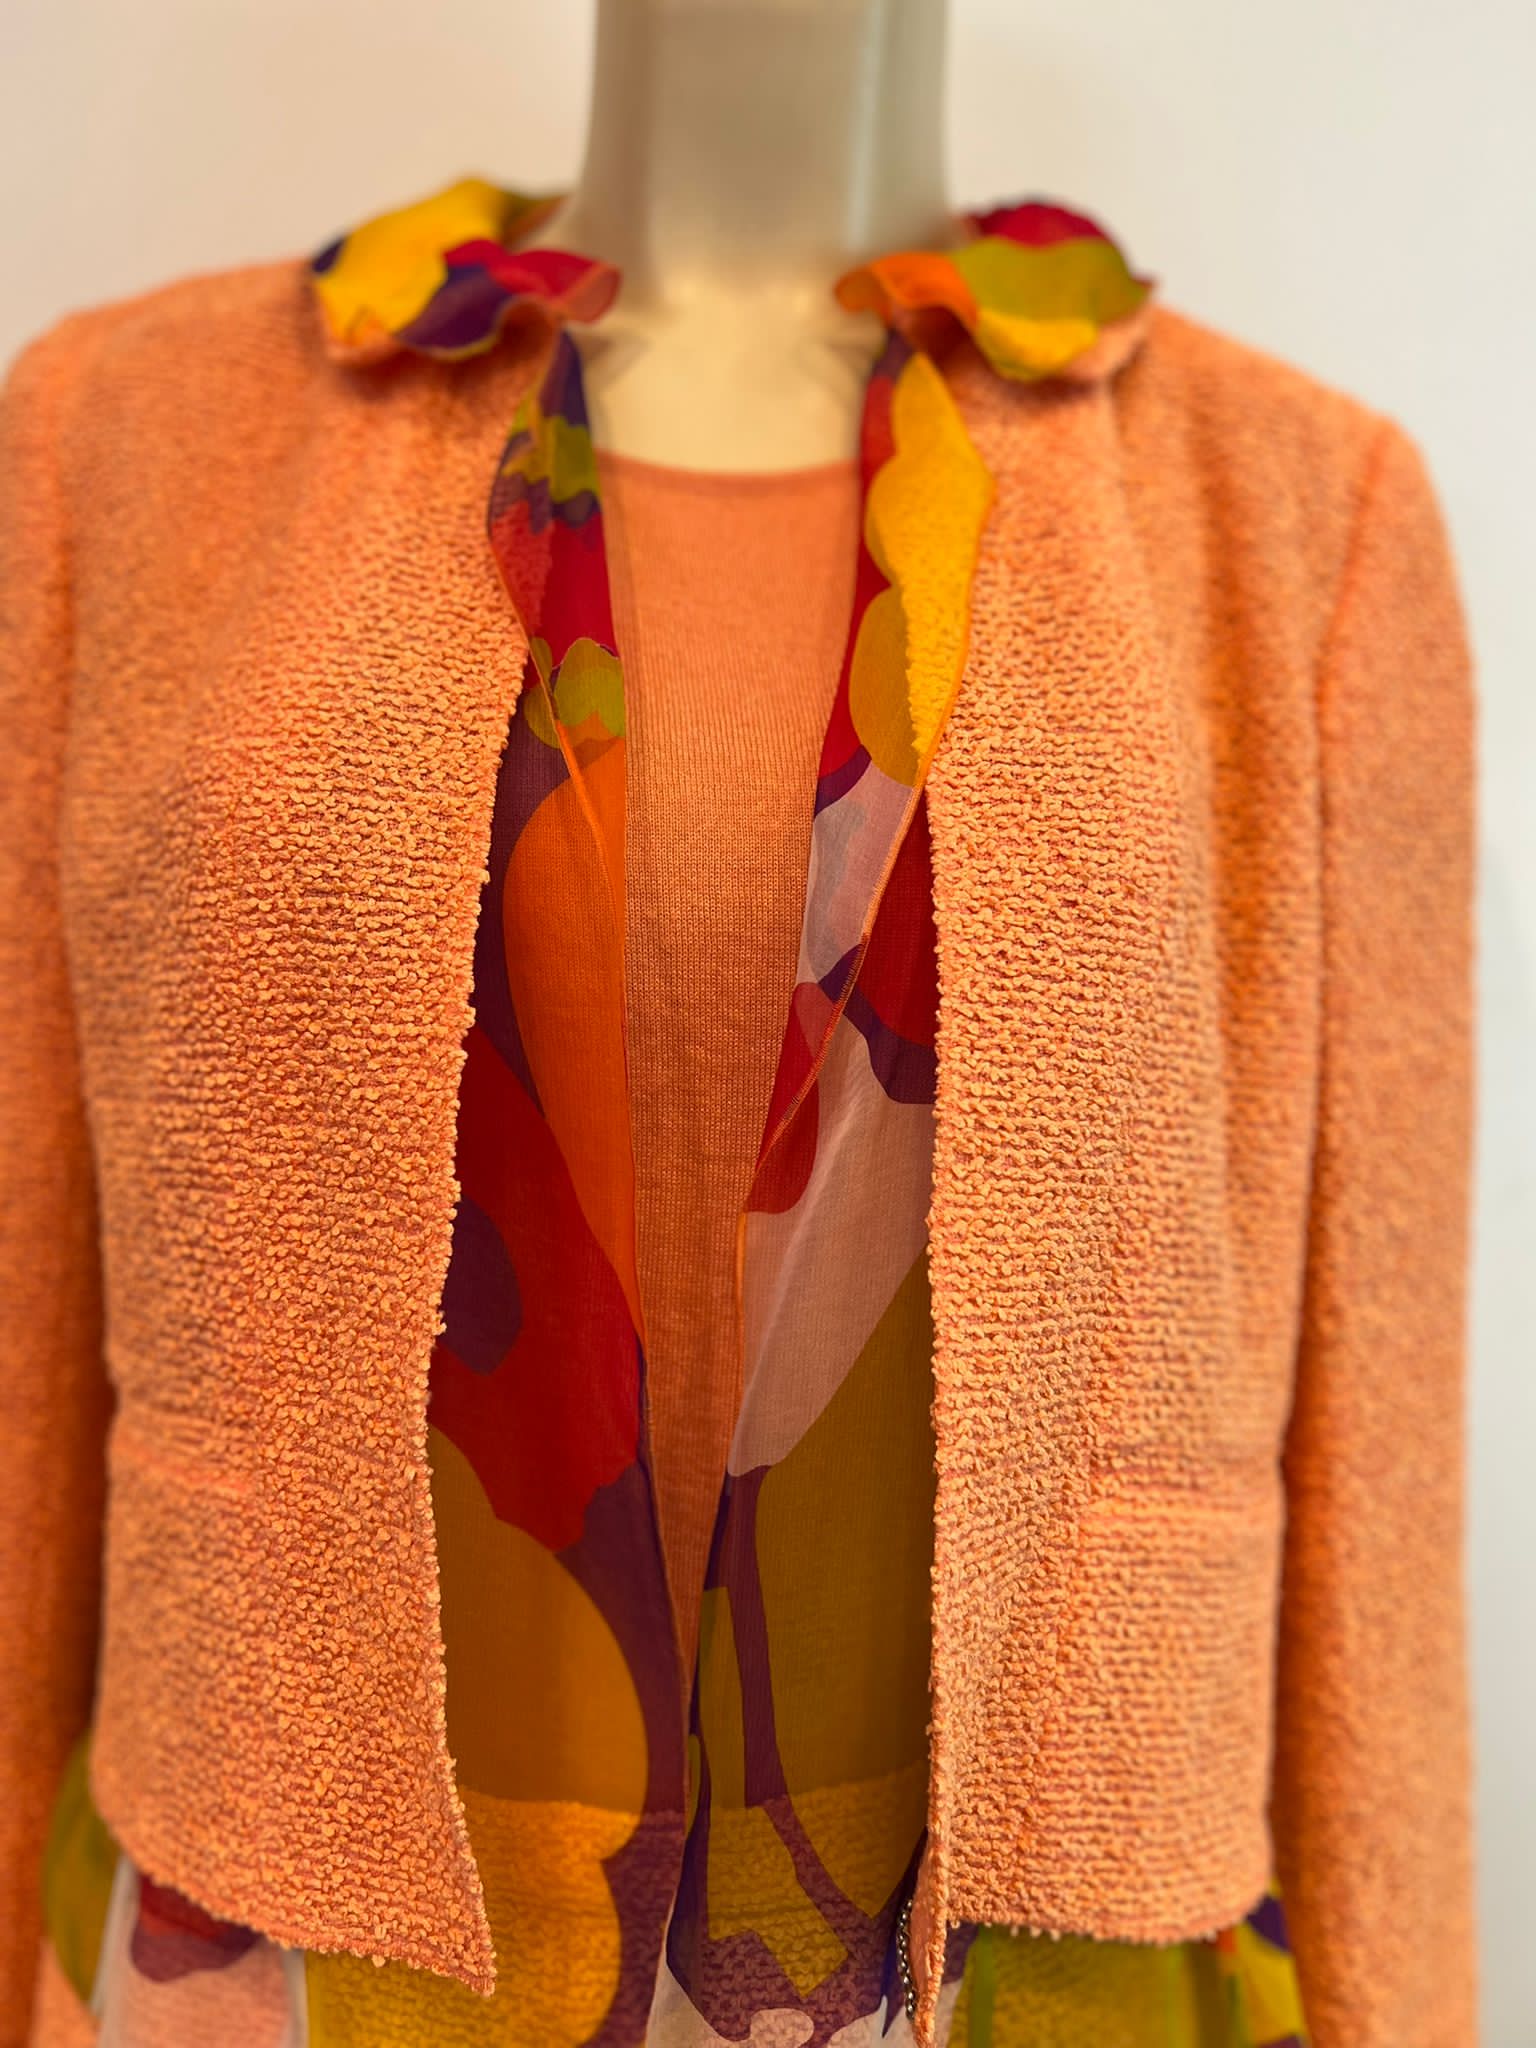 Chanel 00T 2000 Orange Multicolor Skirt Suit FR 40 US 6/8 – HelensChanel